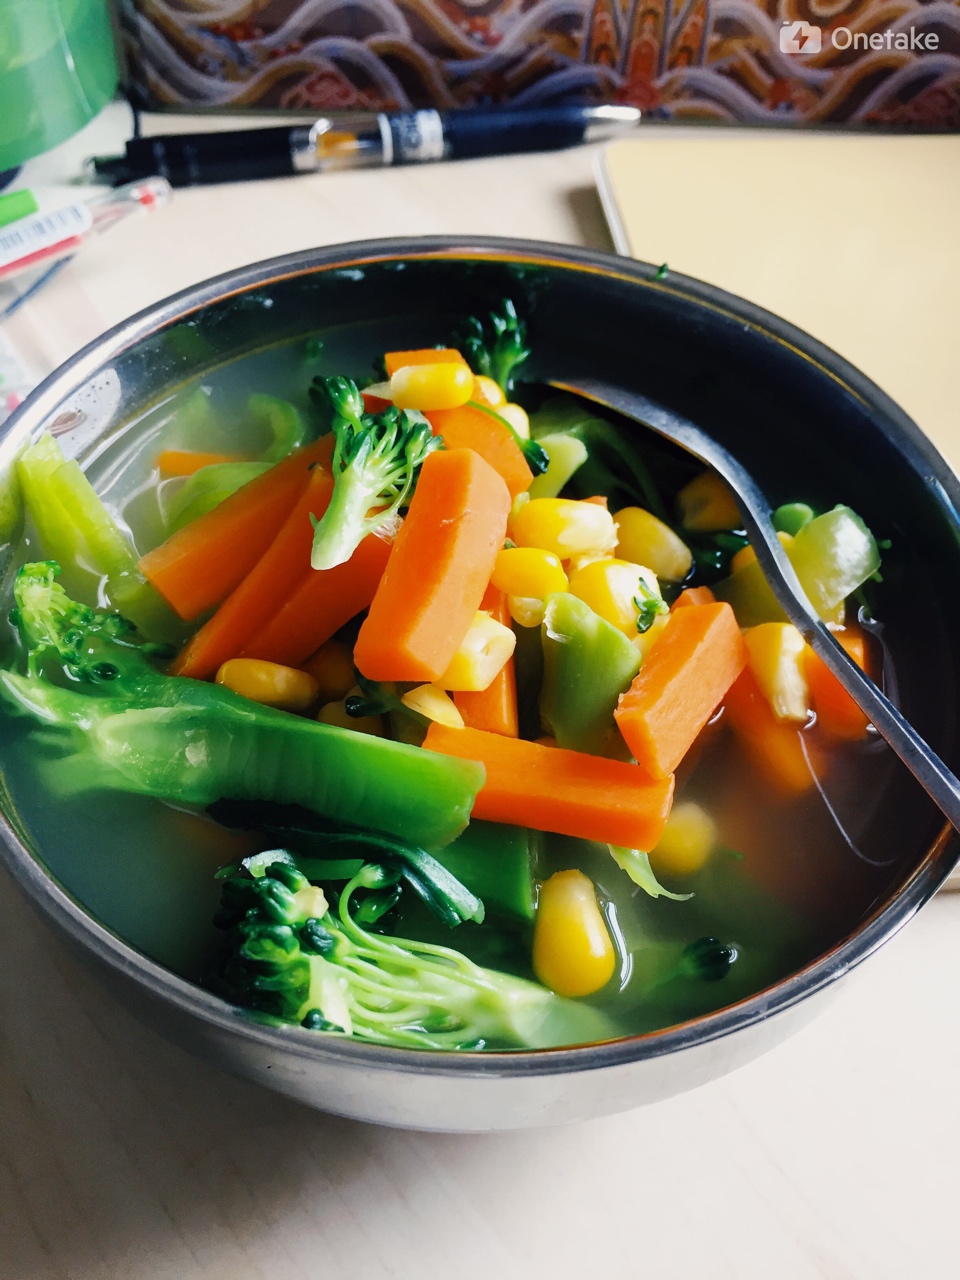 田园蔬菜汤